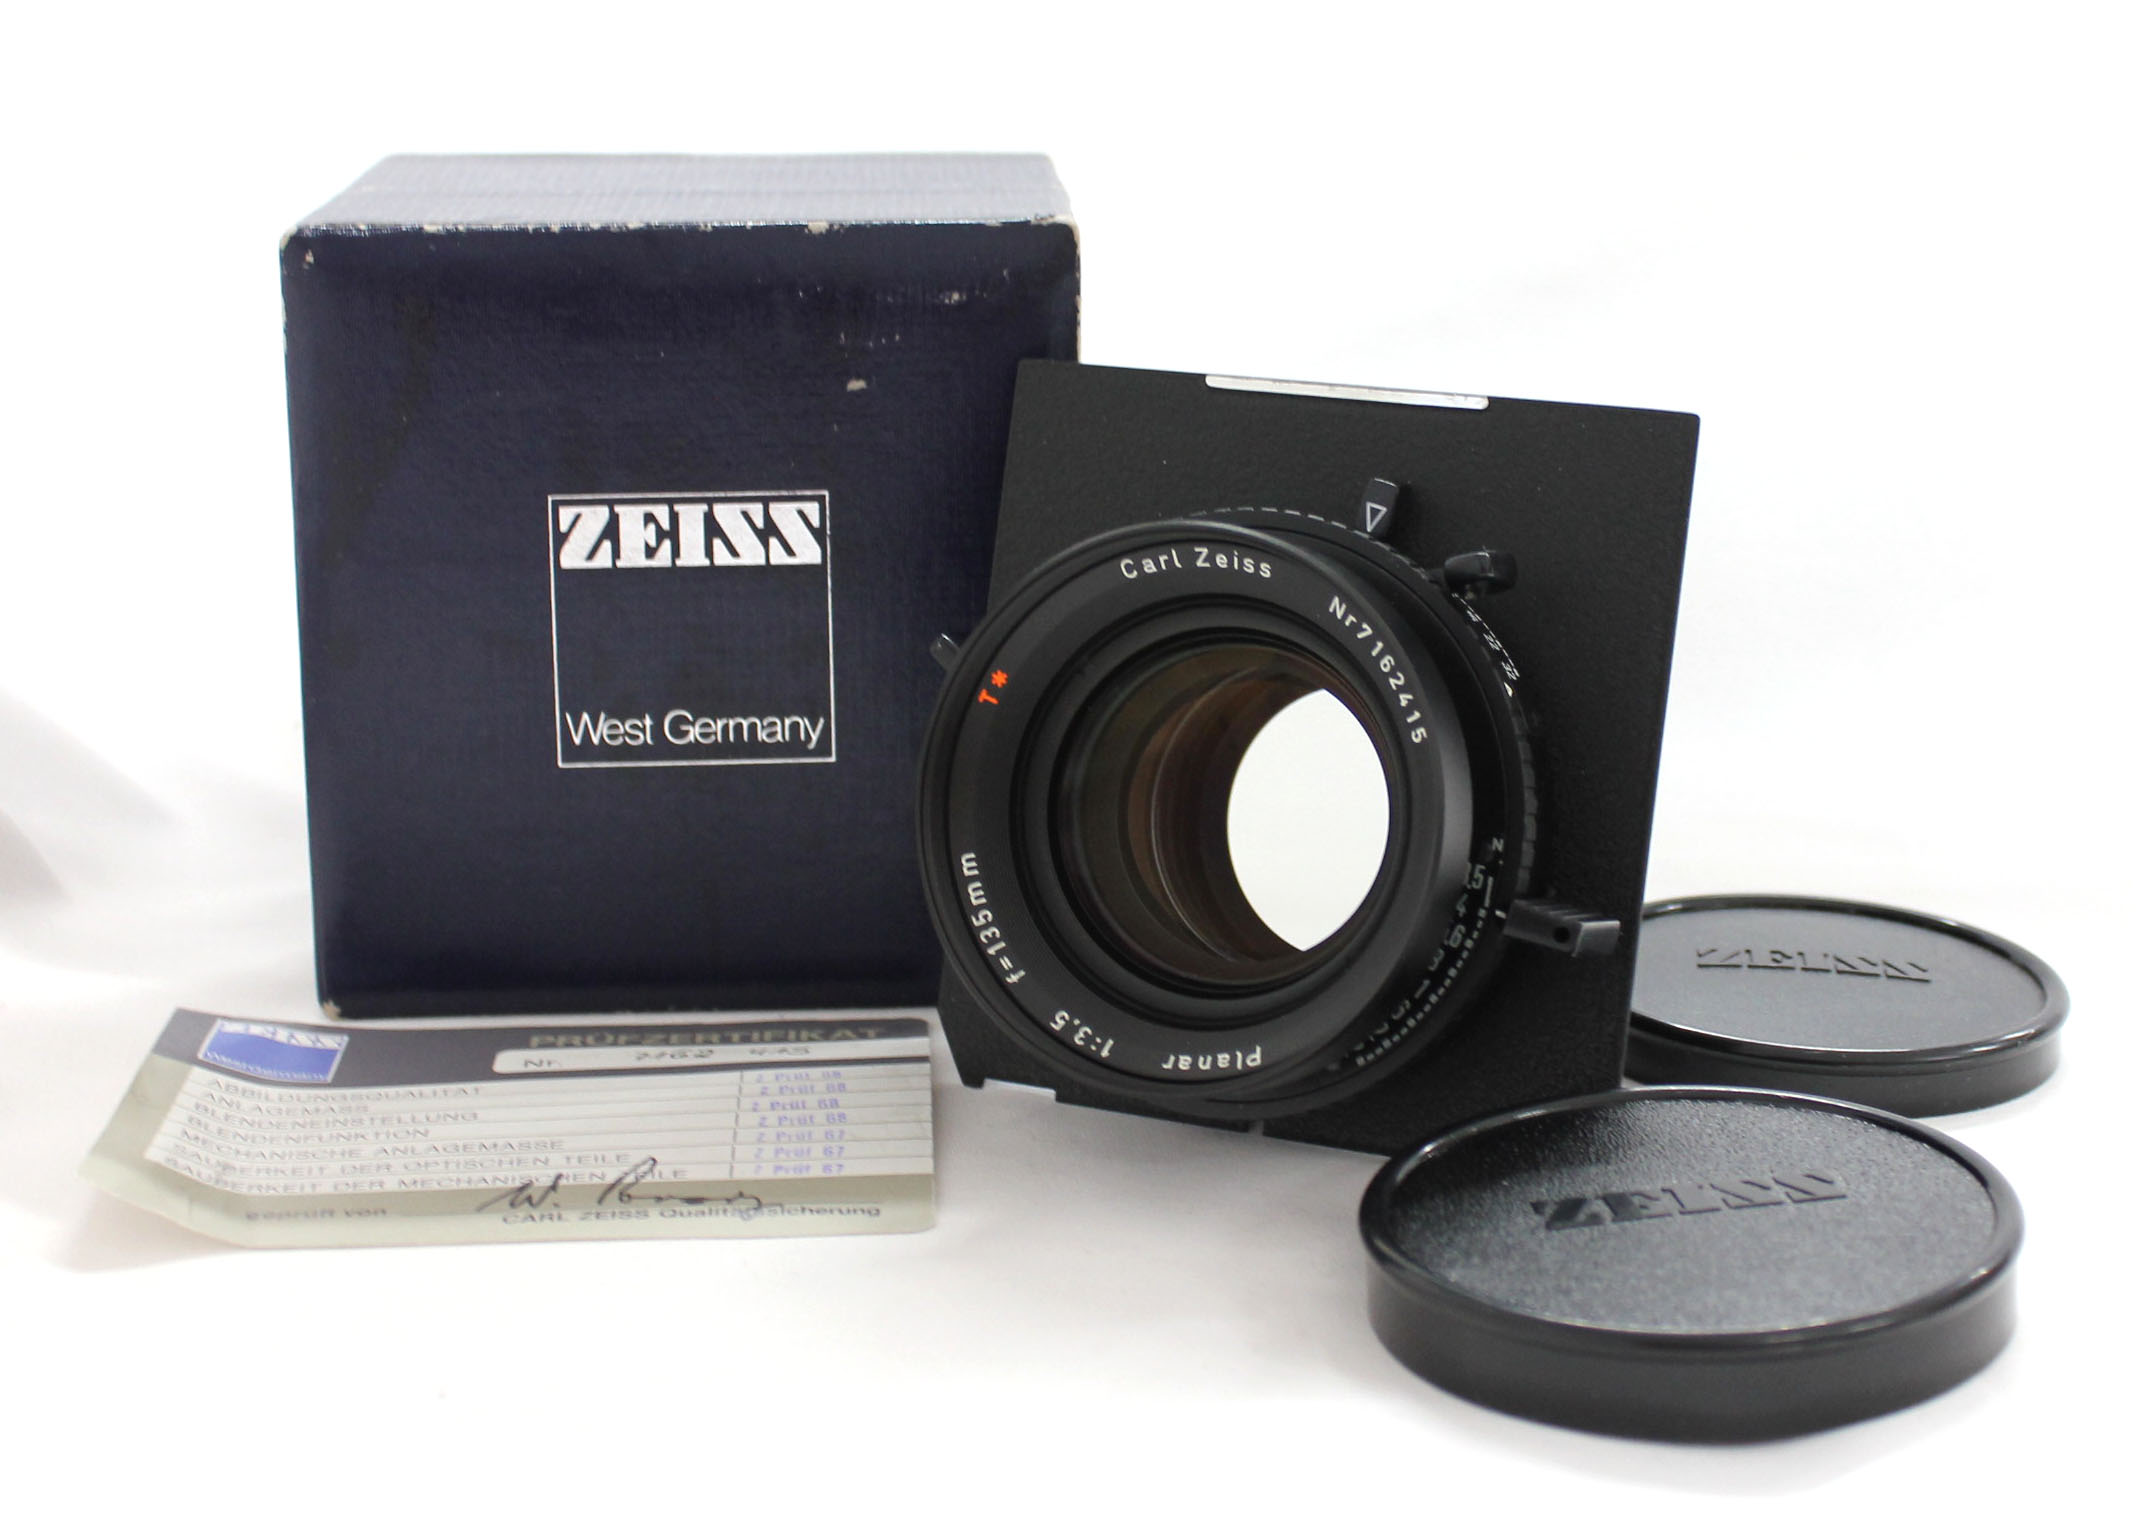 [Mint] Carl Zeiss Planar 135mm F/3.5 T* 4x5 Lens Compur 1 Shutter w/ Toyo Linhof Board from Japan